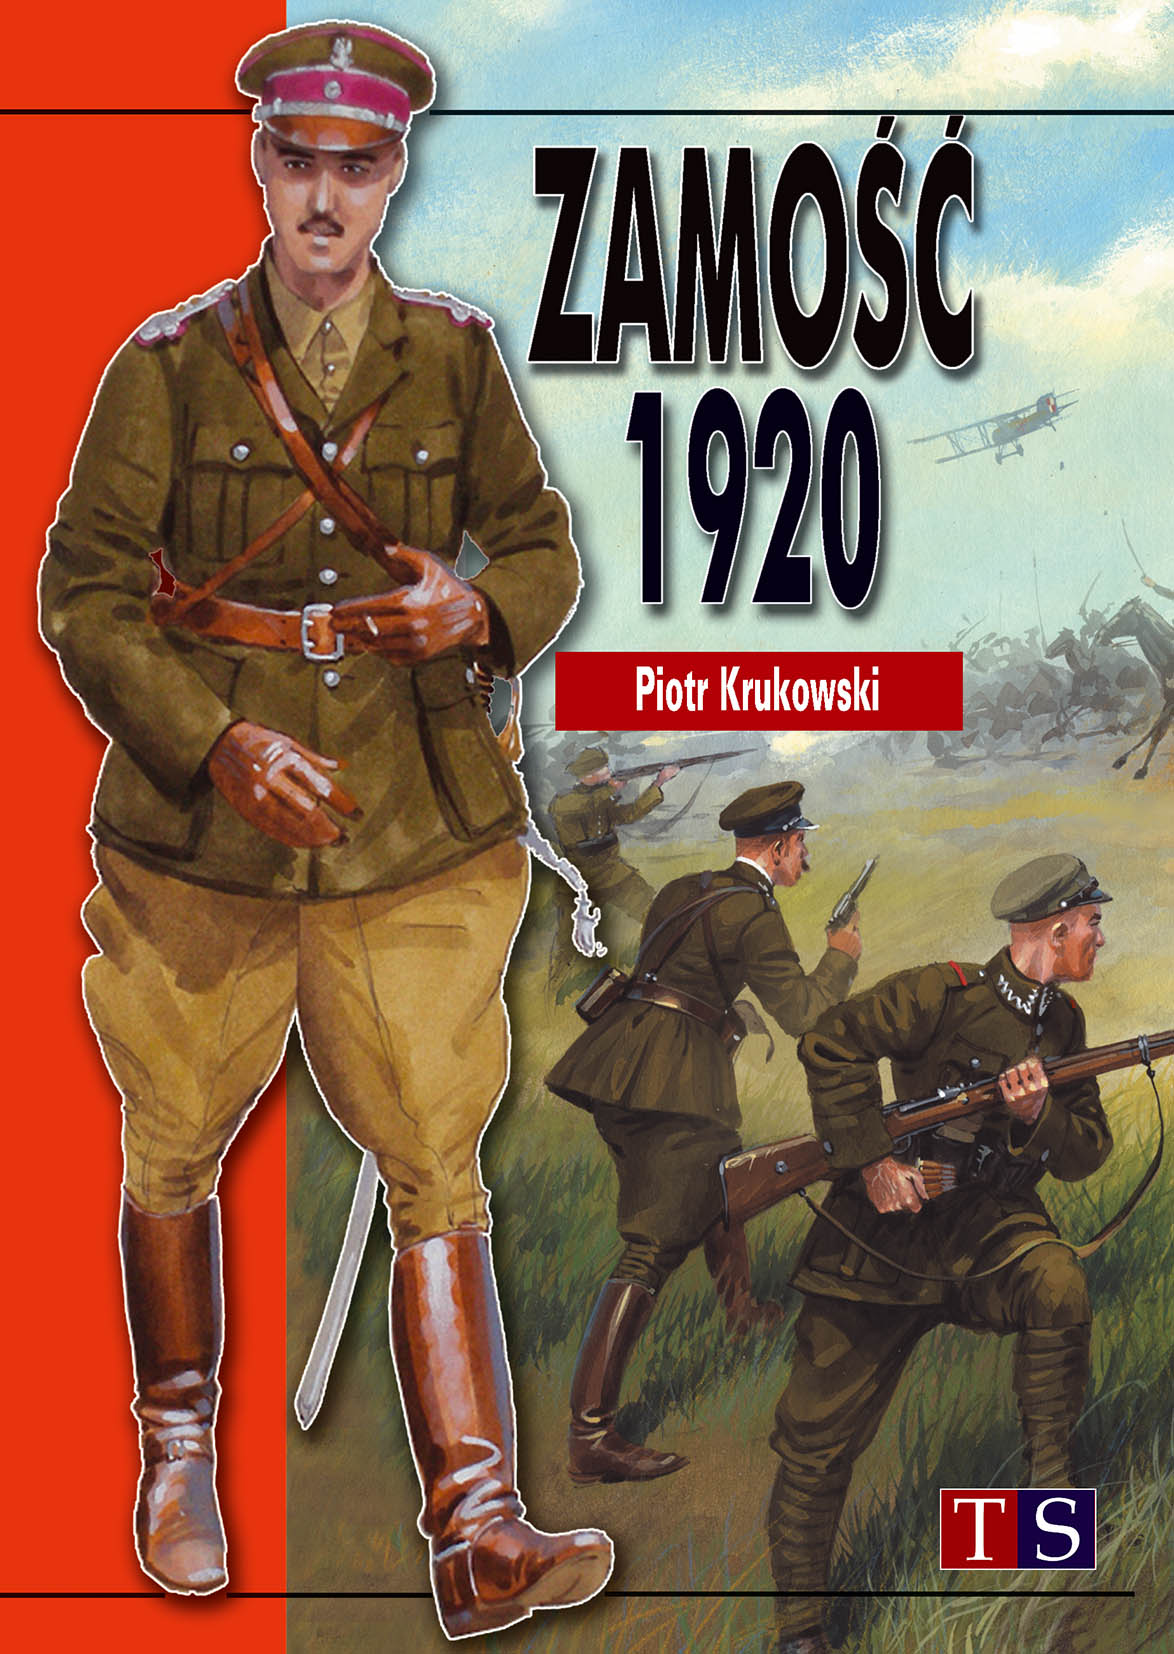 Książka Zamość 1920 wydawnictwa Taktyka i Strategia